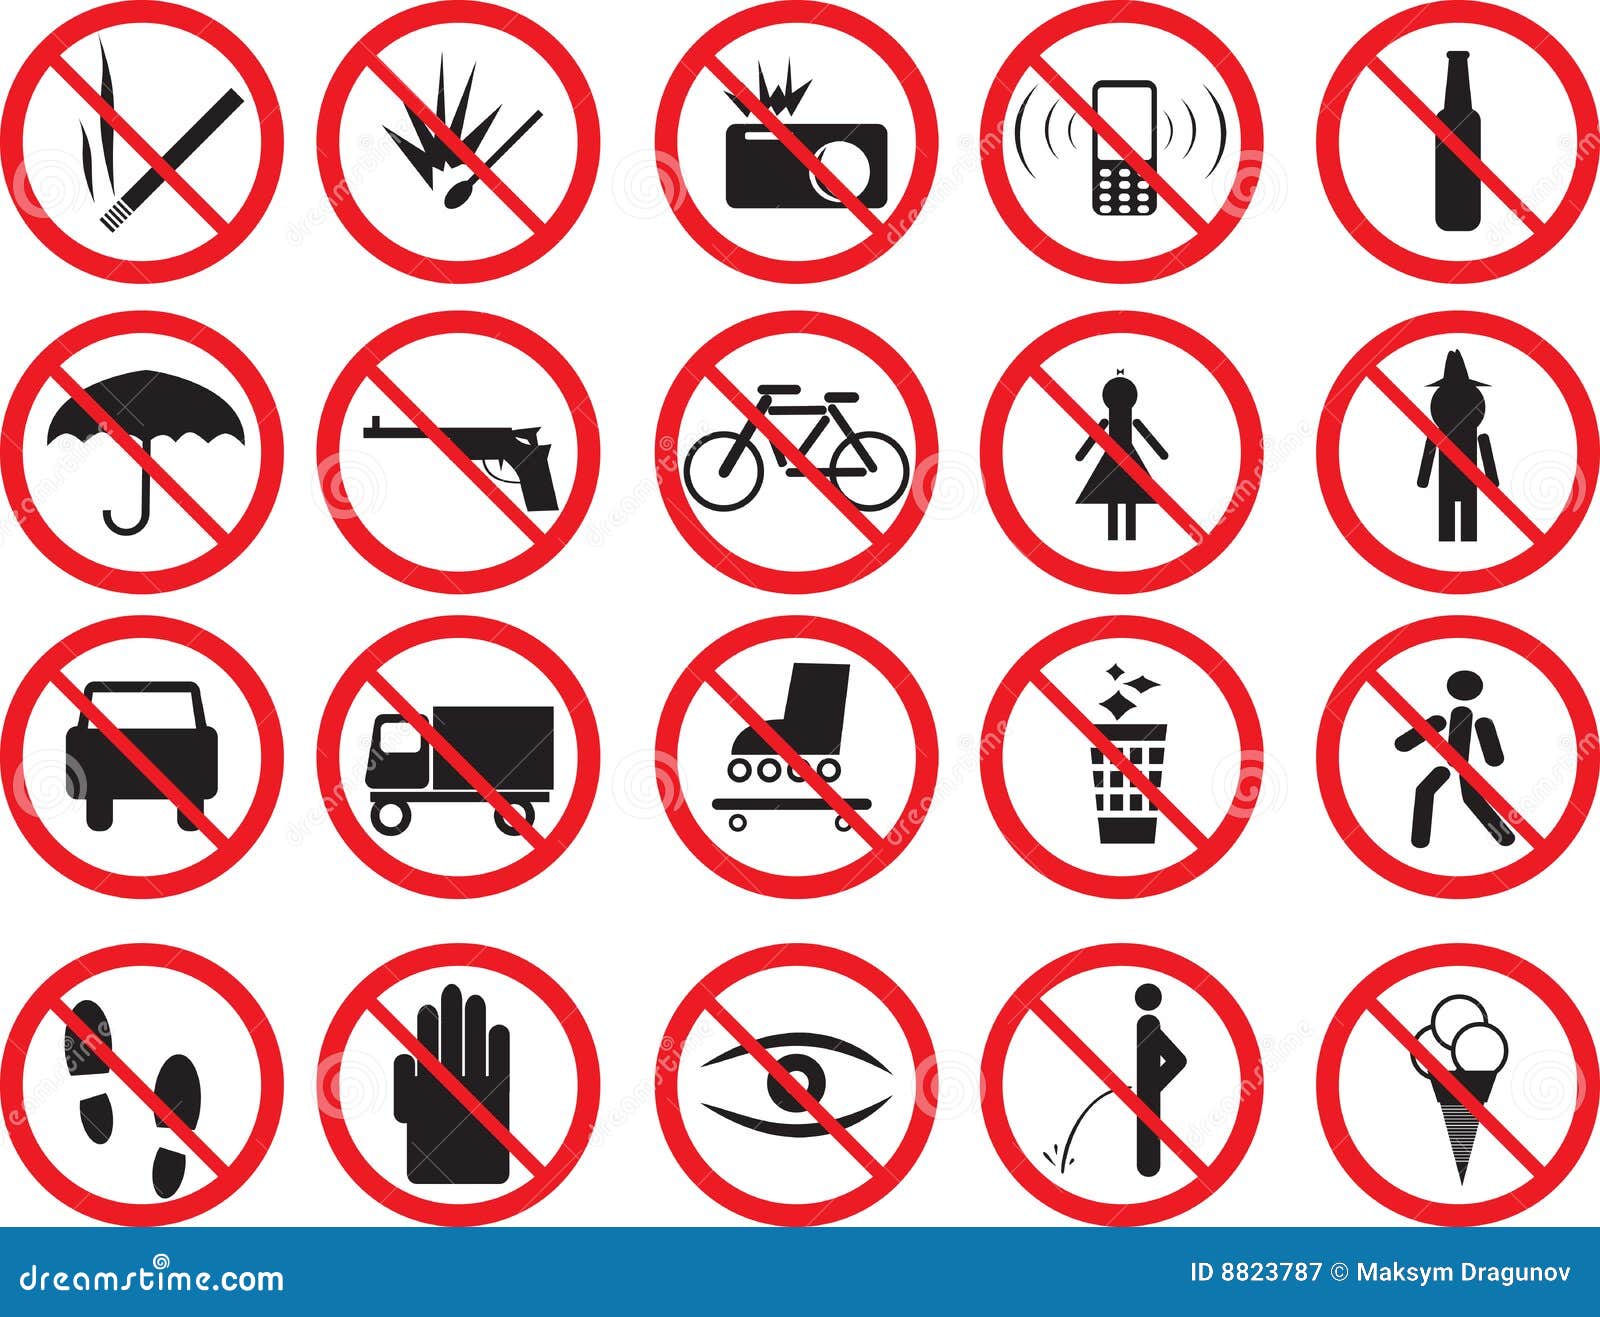 Знак запрета. Запрещающие знаки в доме. Предупреждающие и запрещающие знаки поведения в обществе. Запрещающие знаки для аттракционов.